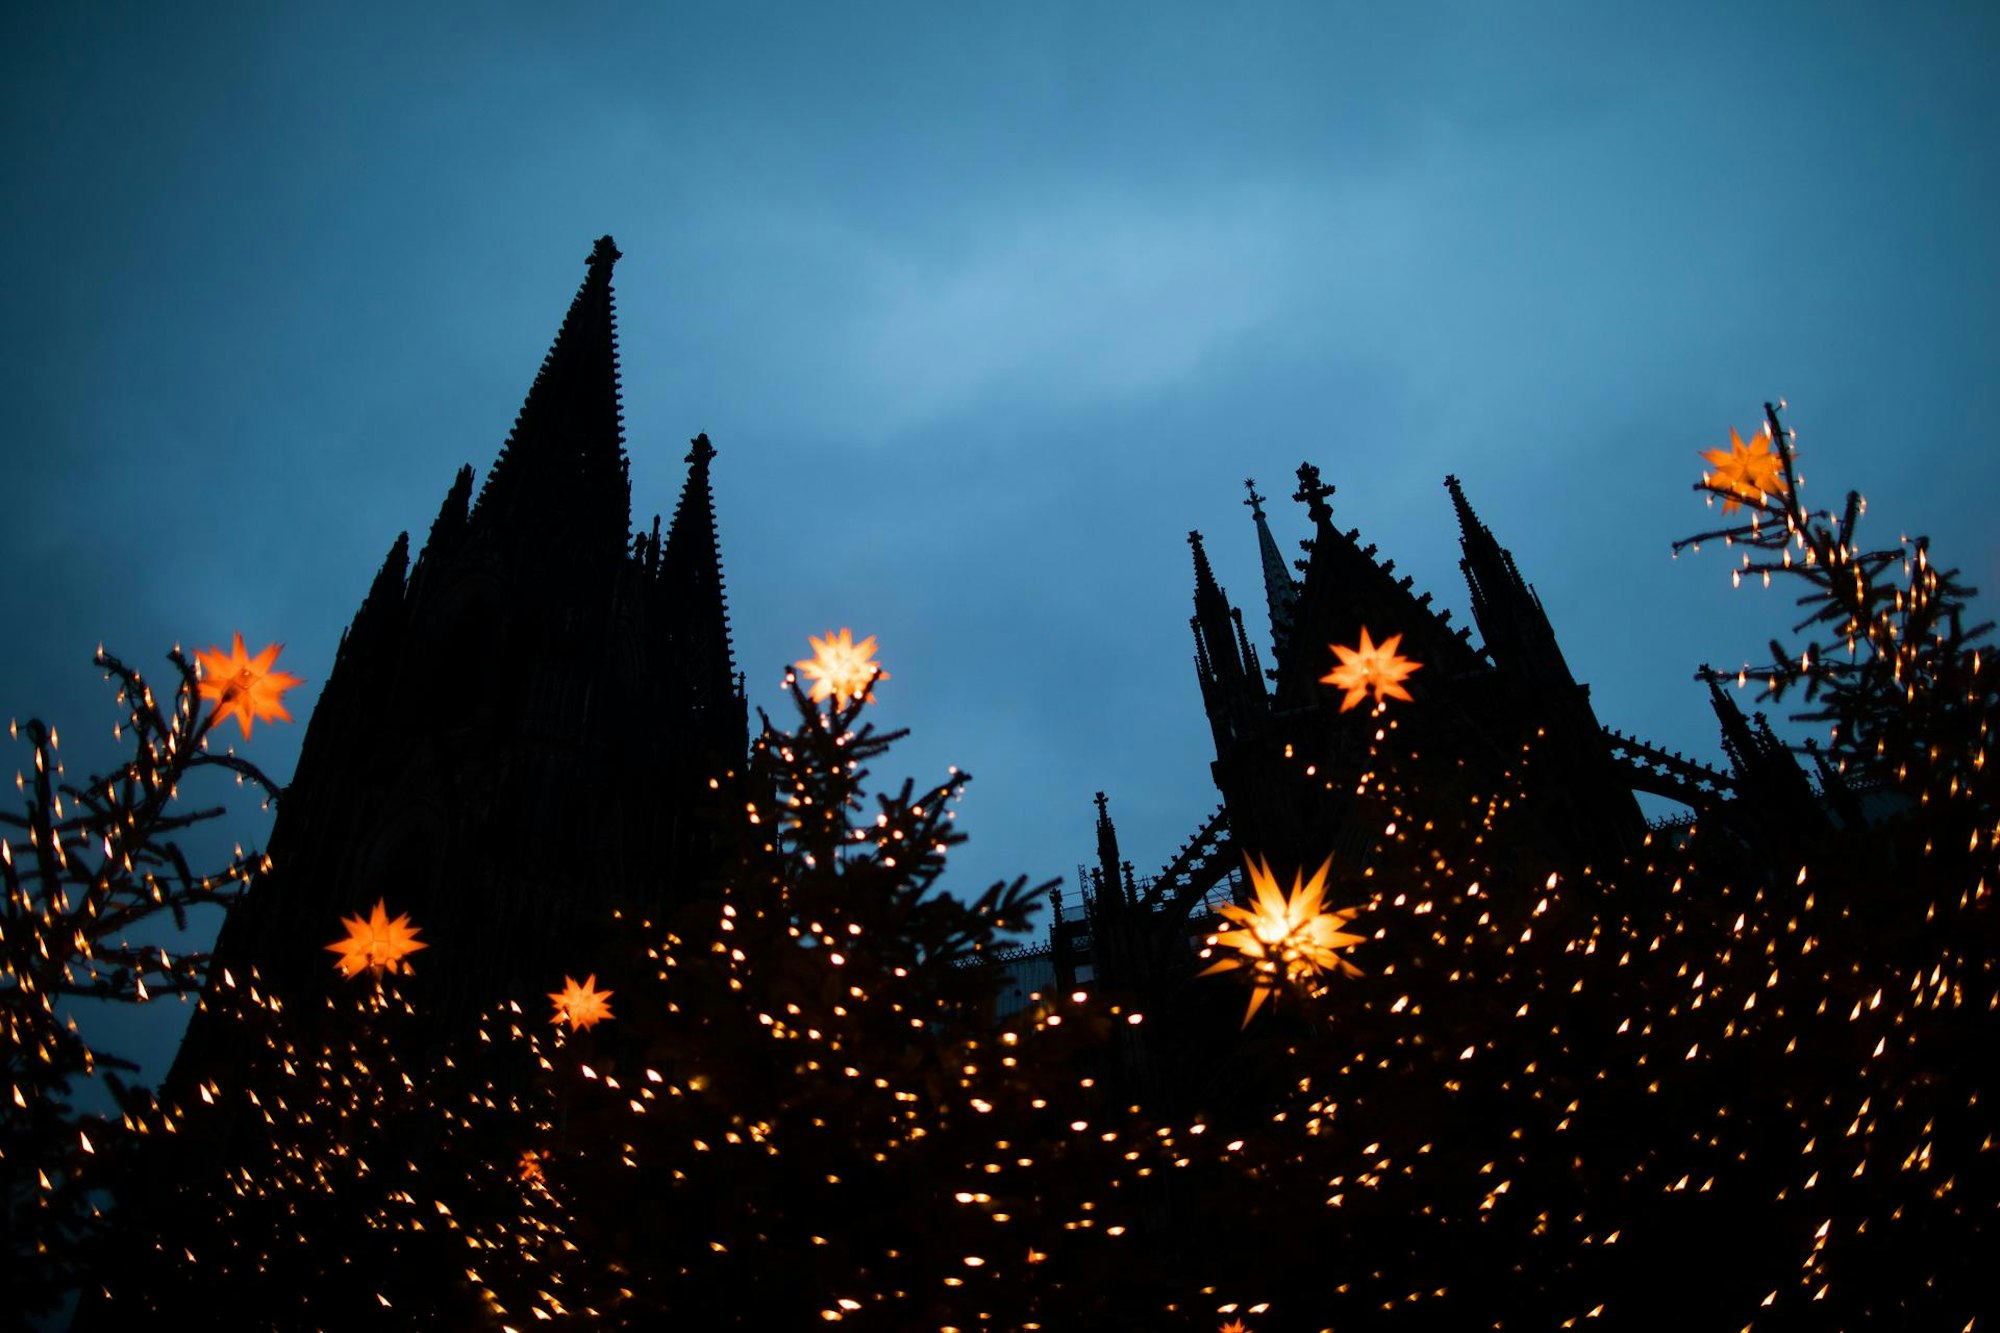 Der Kölner Dom in der Dämmerung, halb verborgen hinter Lichterketten und Weihnachtsbäumen.